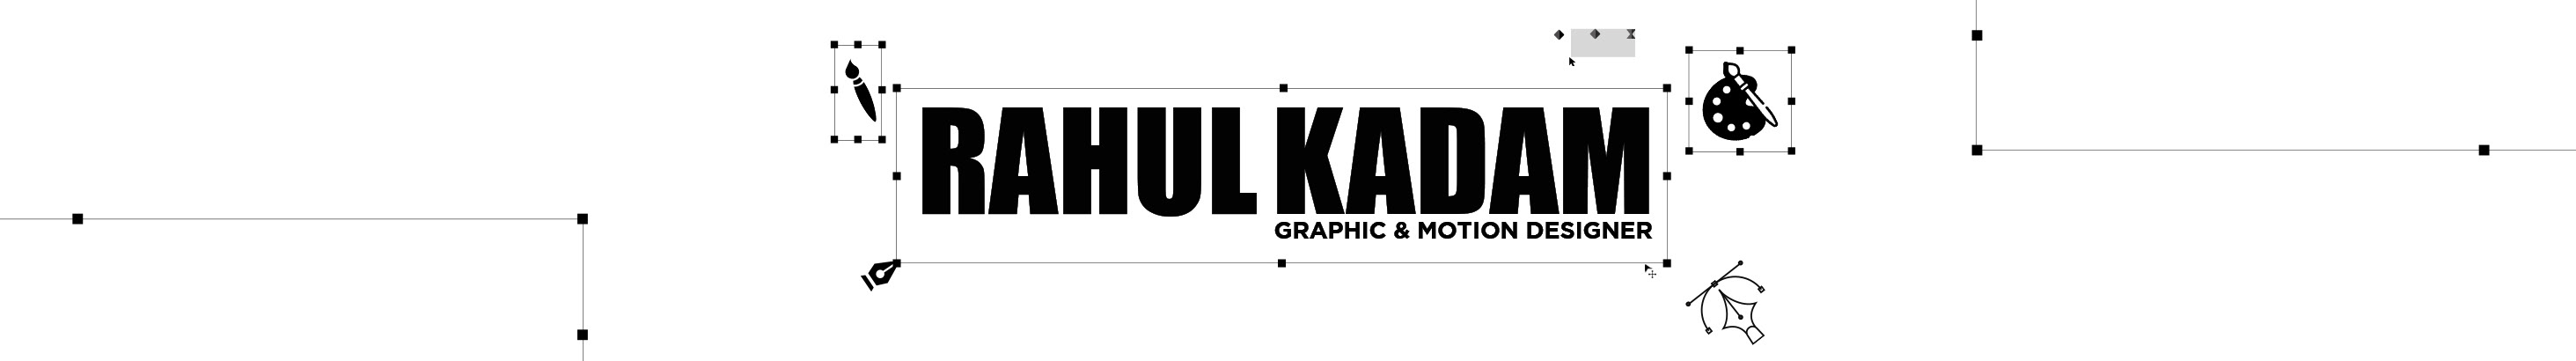 Bannière de profil de Rahul kadam